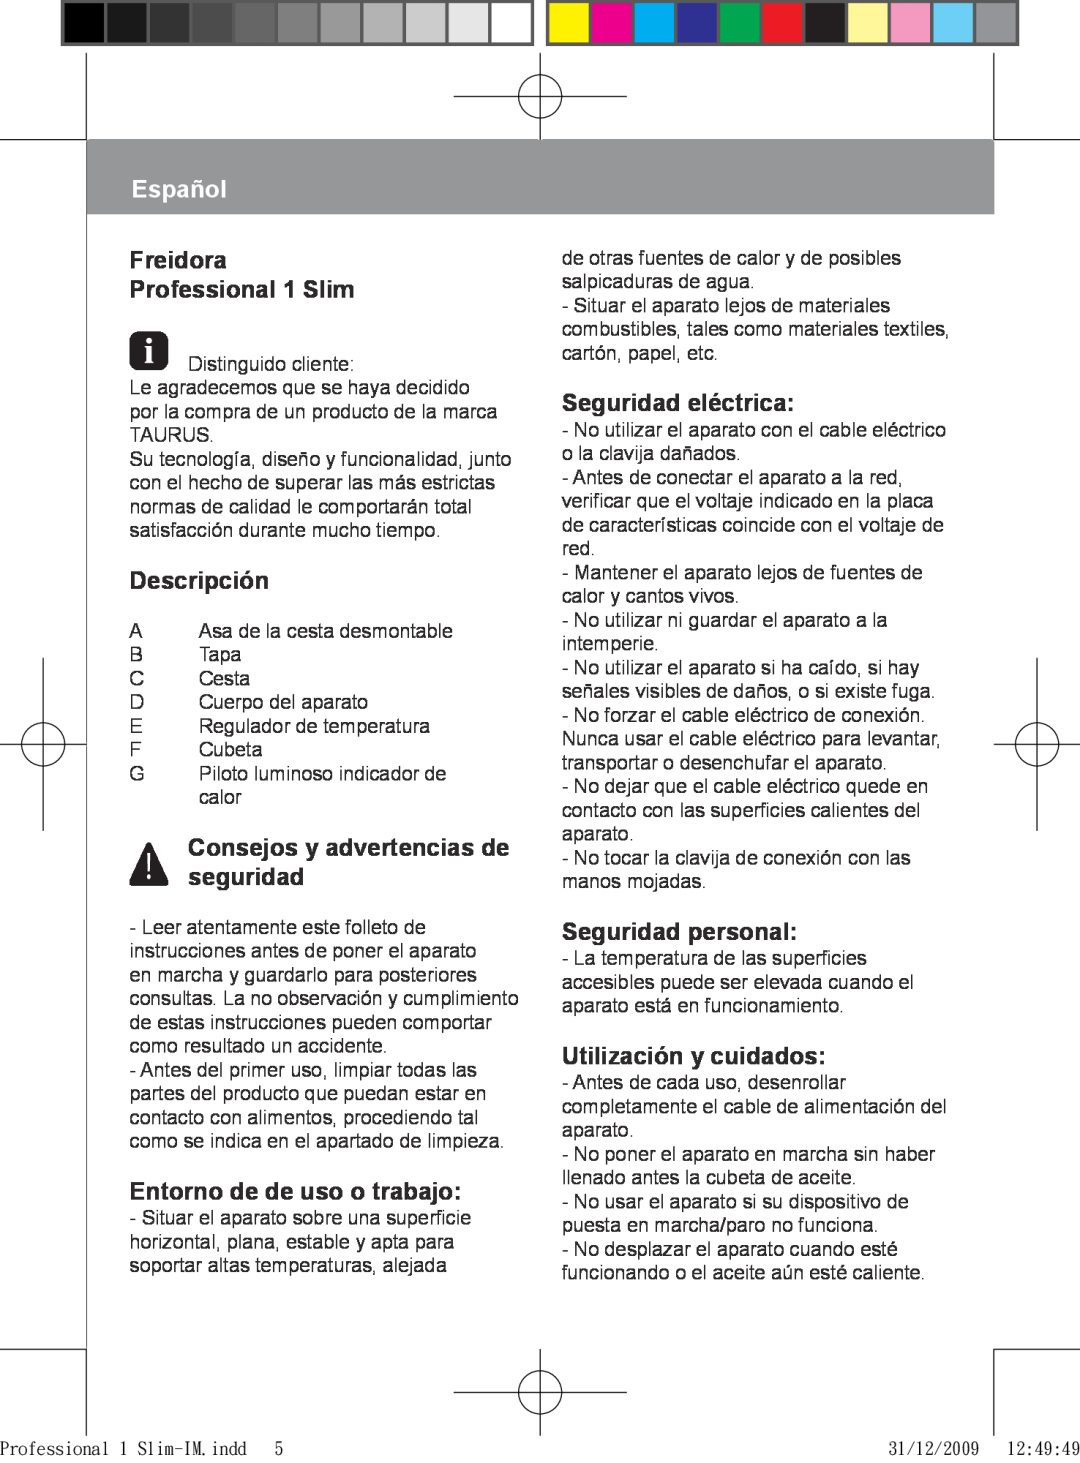 Taurus Group manual Español, Freidora Professional 1 Slim, Descripción, Consejos y advertencias de seguridad 